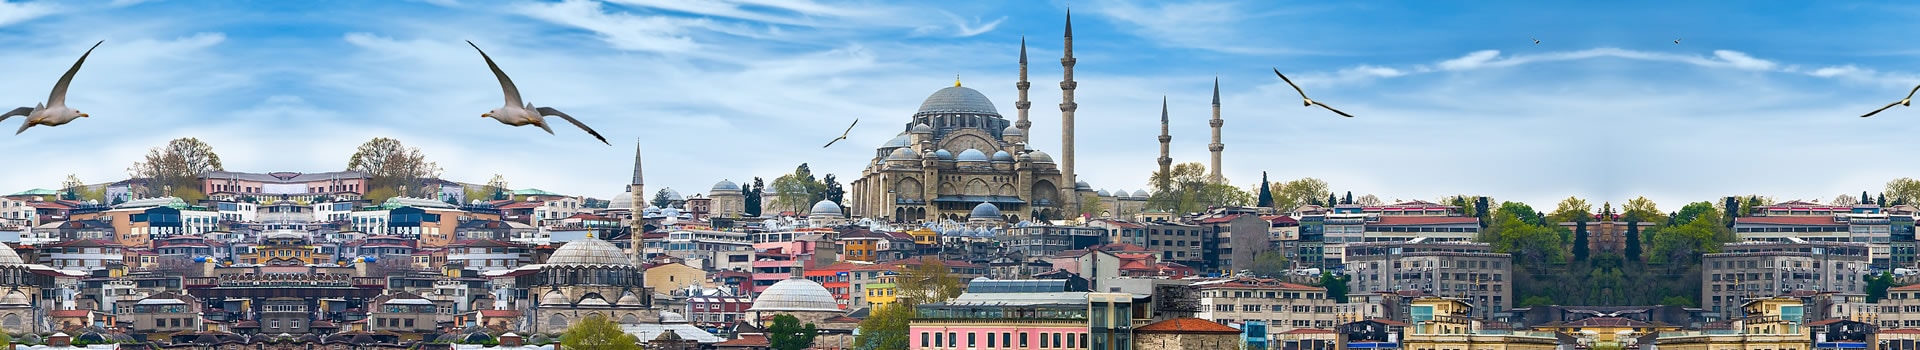 Ténérife - Istanbul